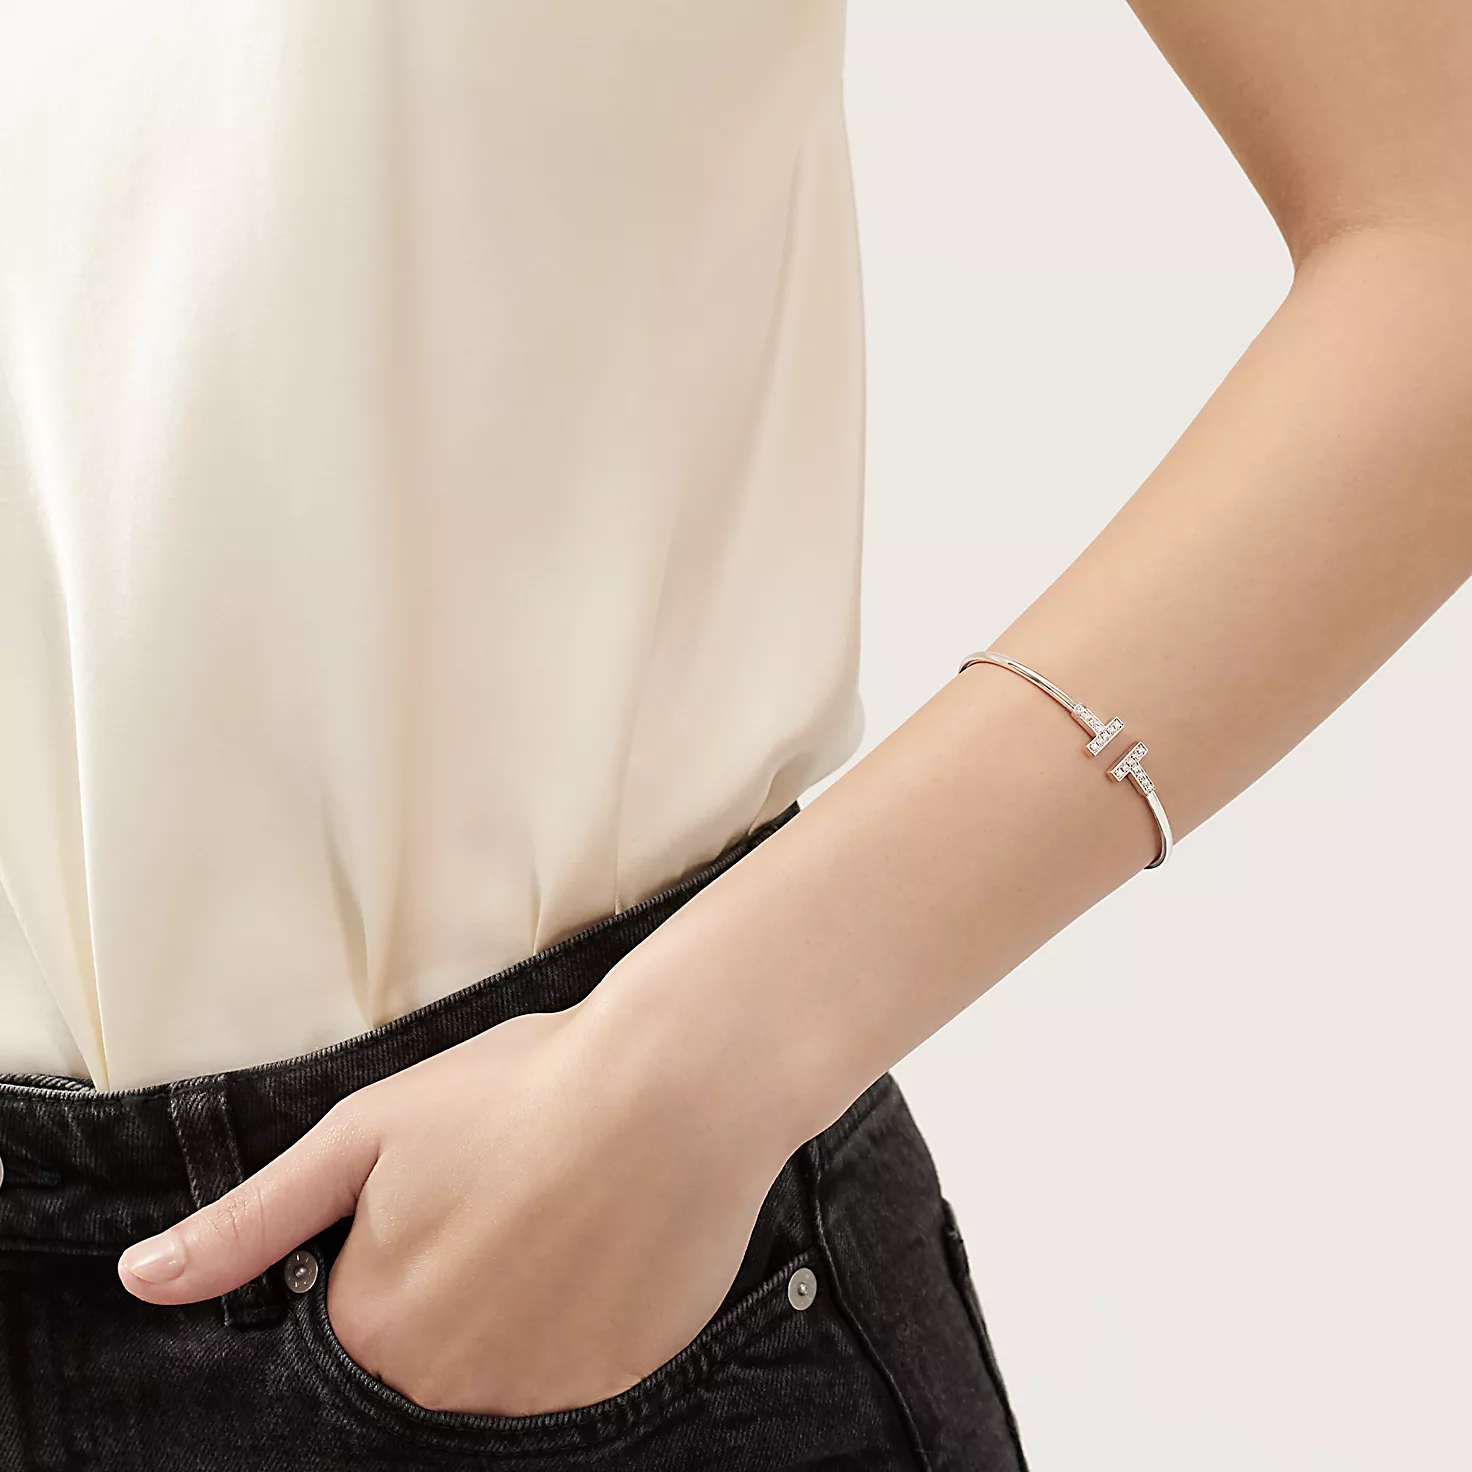 Tiffany T:다이아몬드 와이어 브레이슬릿, 18K 화이트 골드 이미지 번호 1